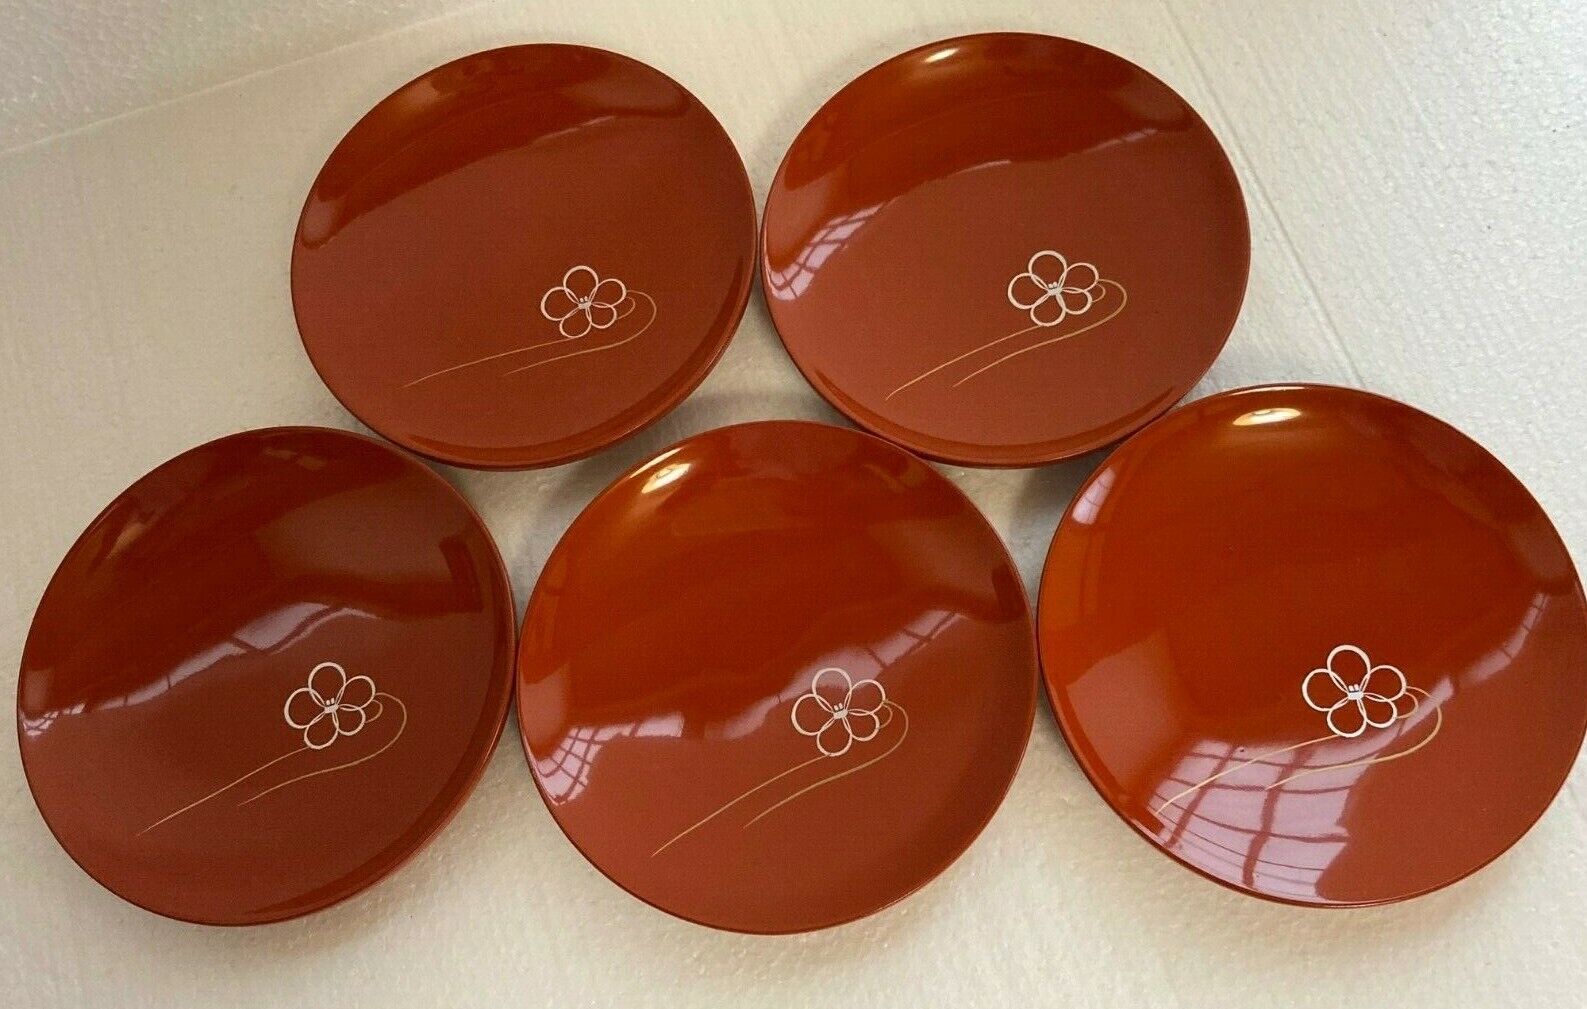 【SALE】Preowned WAJIMA-NURI Lacquerware 5 Plates Set 5.3in Red